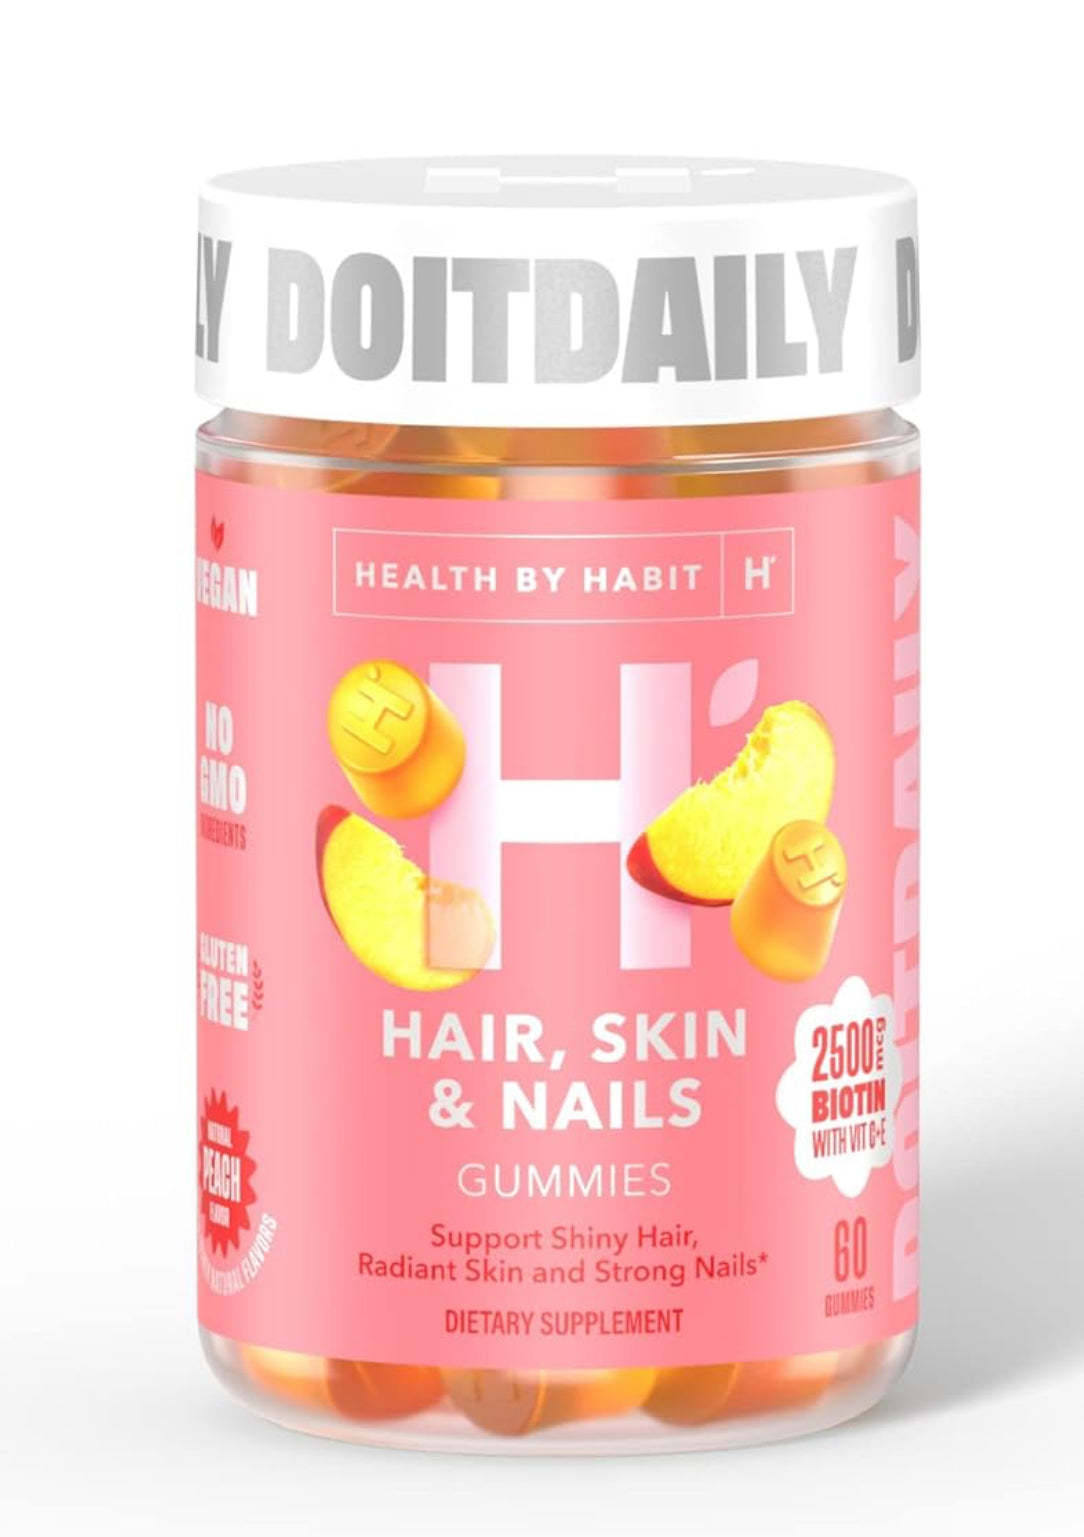 Health By Habit Suplemento para cabello, piel y uñas